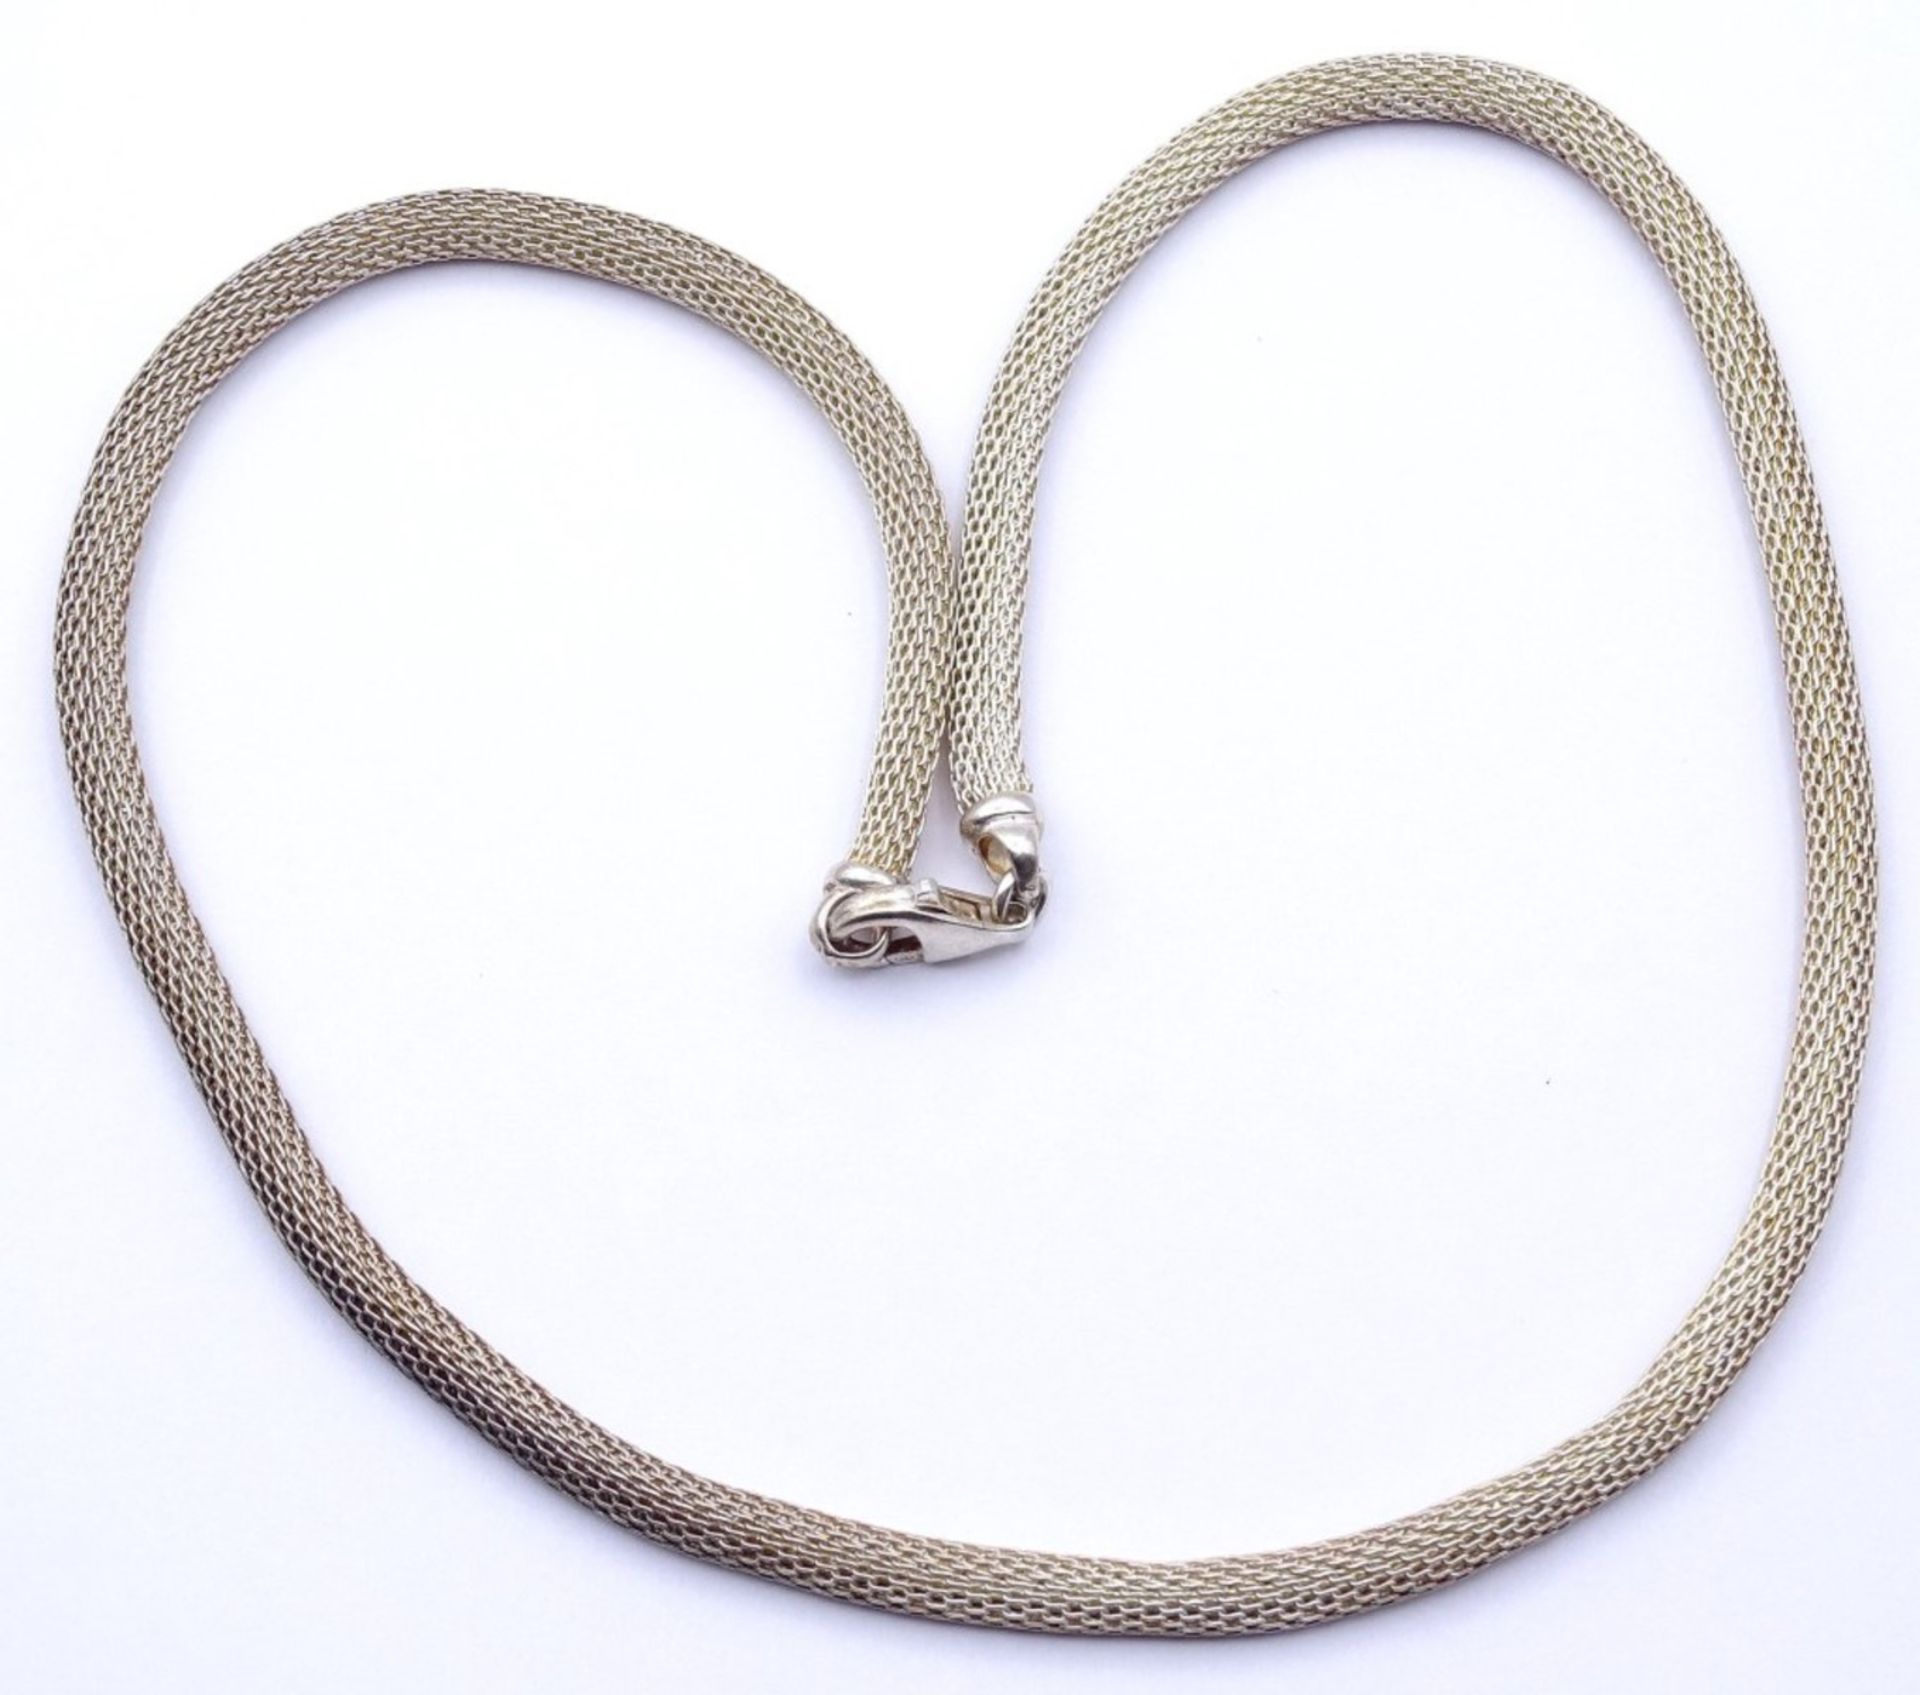 Silber Halskette 925/000 mit Karabiner Verschluss,L. 45cm, 18,9g.,